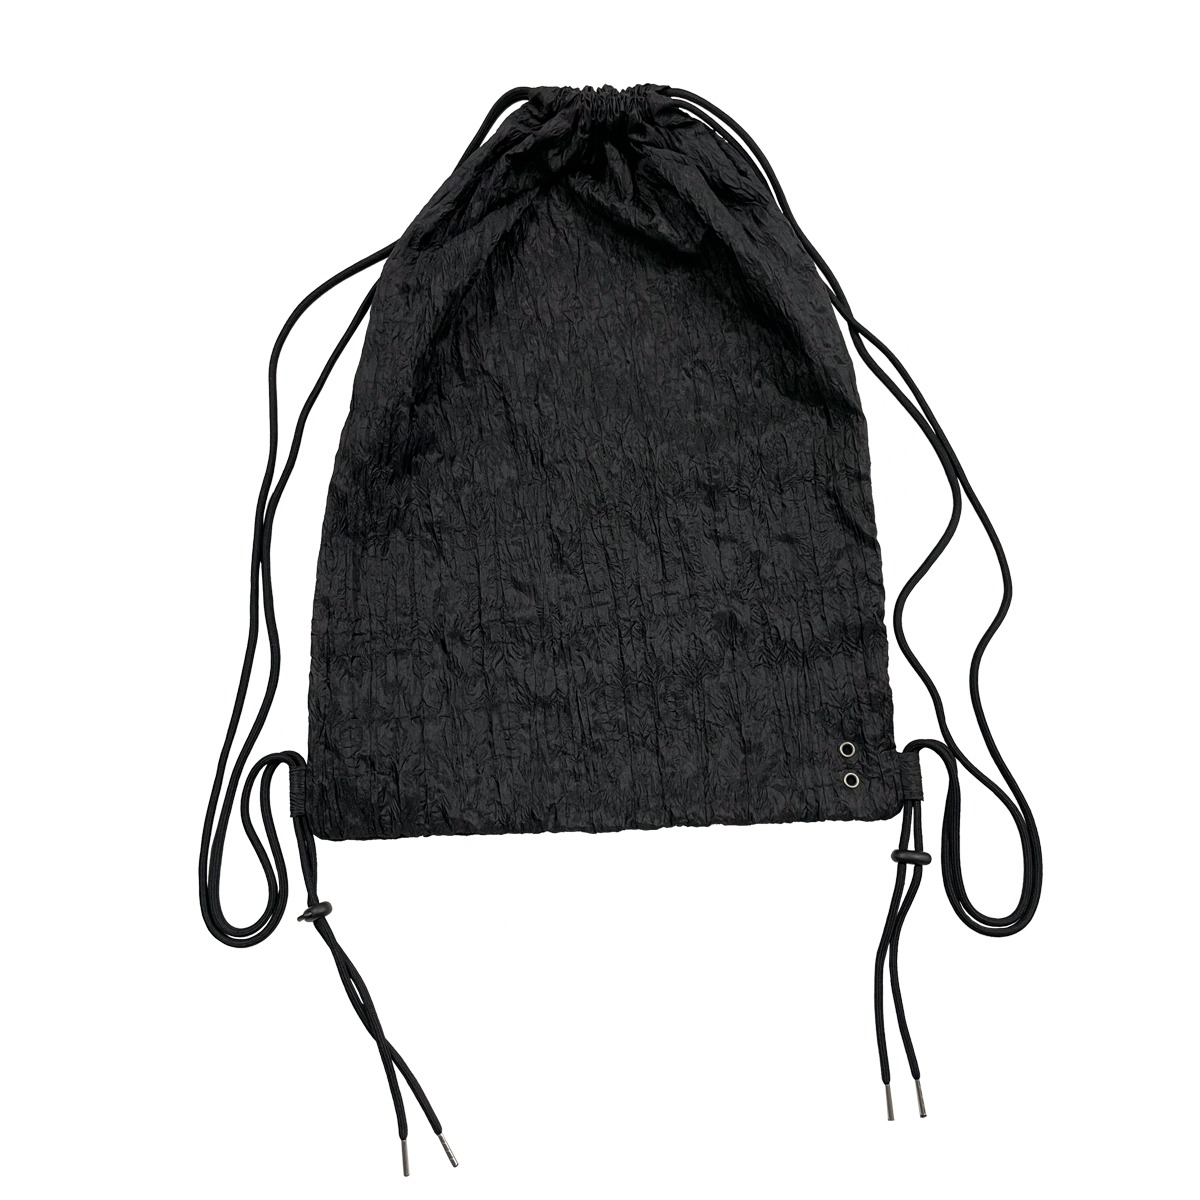 TCM double fabric gym sack (black)